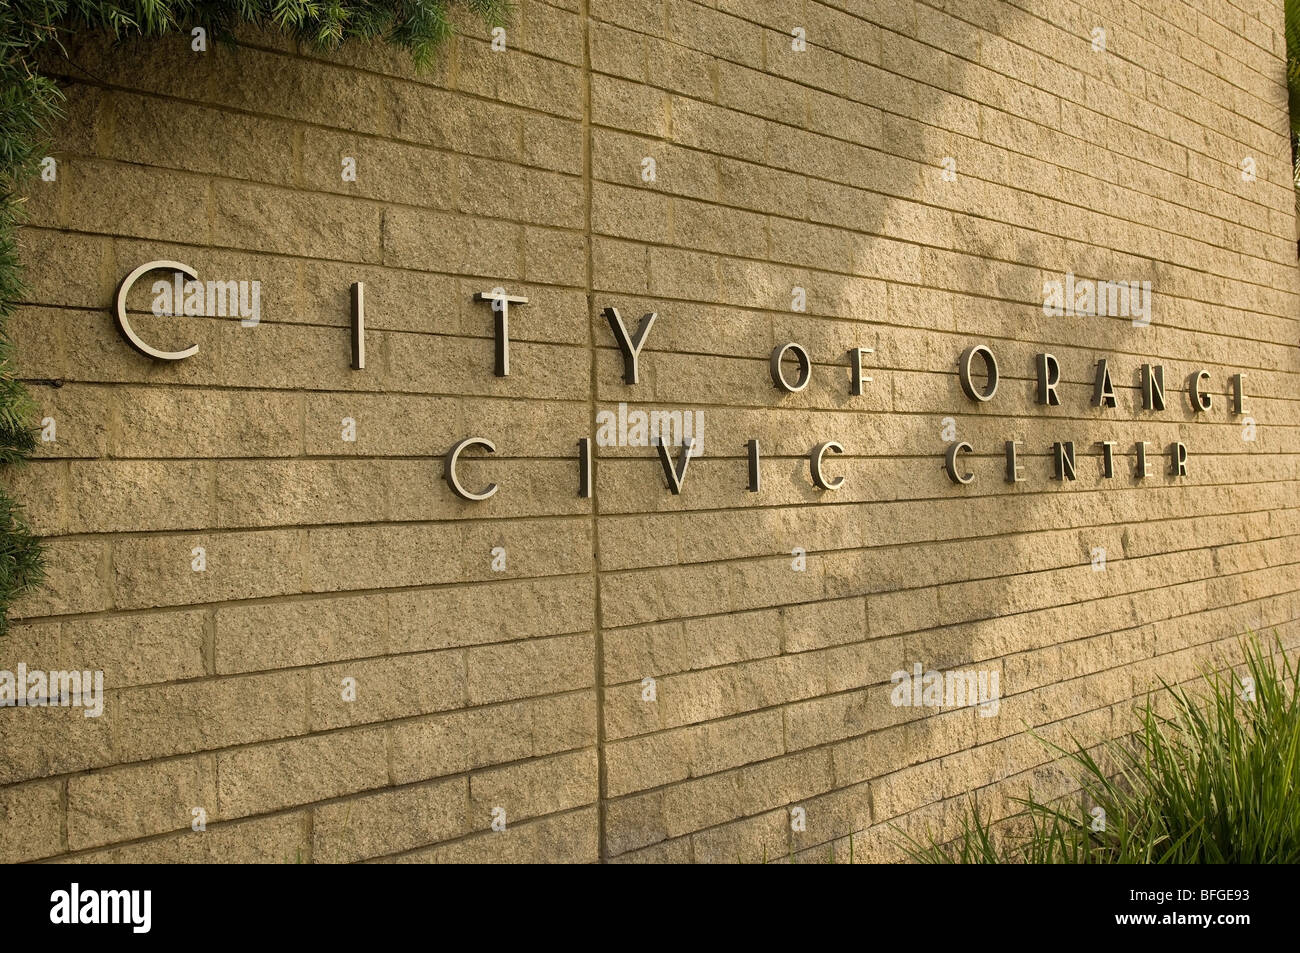 Città di Orange Civic Center Foto Stock